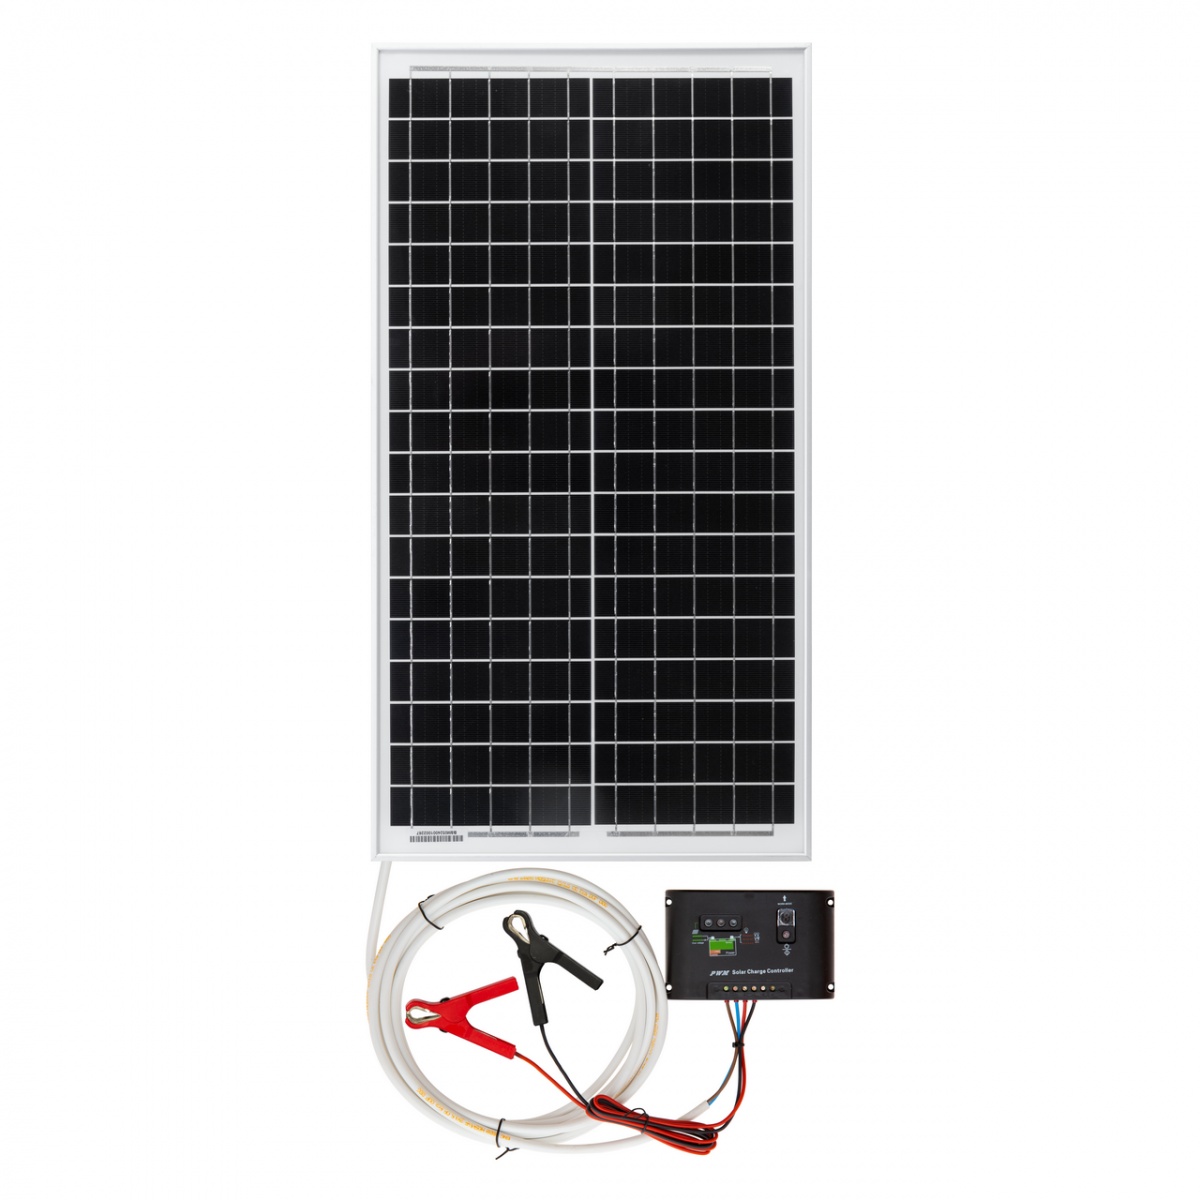 DL 4500 villanypásztor készülék, 12 V, 4,5 Joule, napelemes rendszerrel